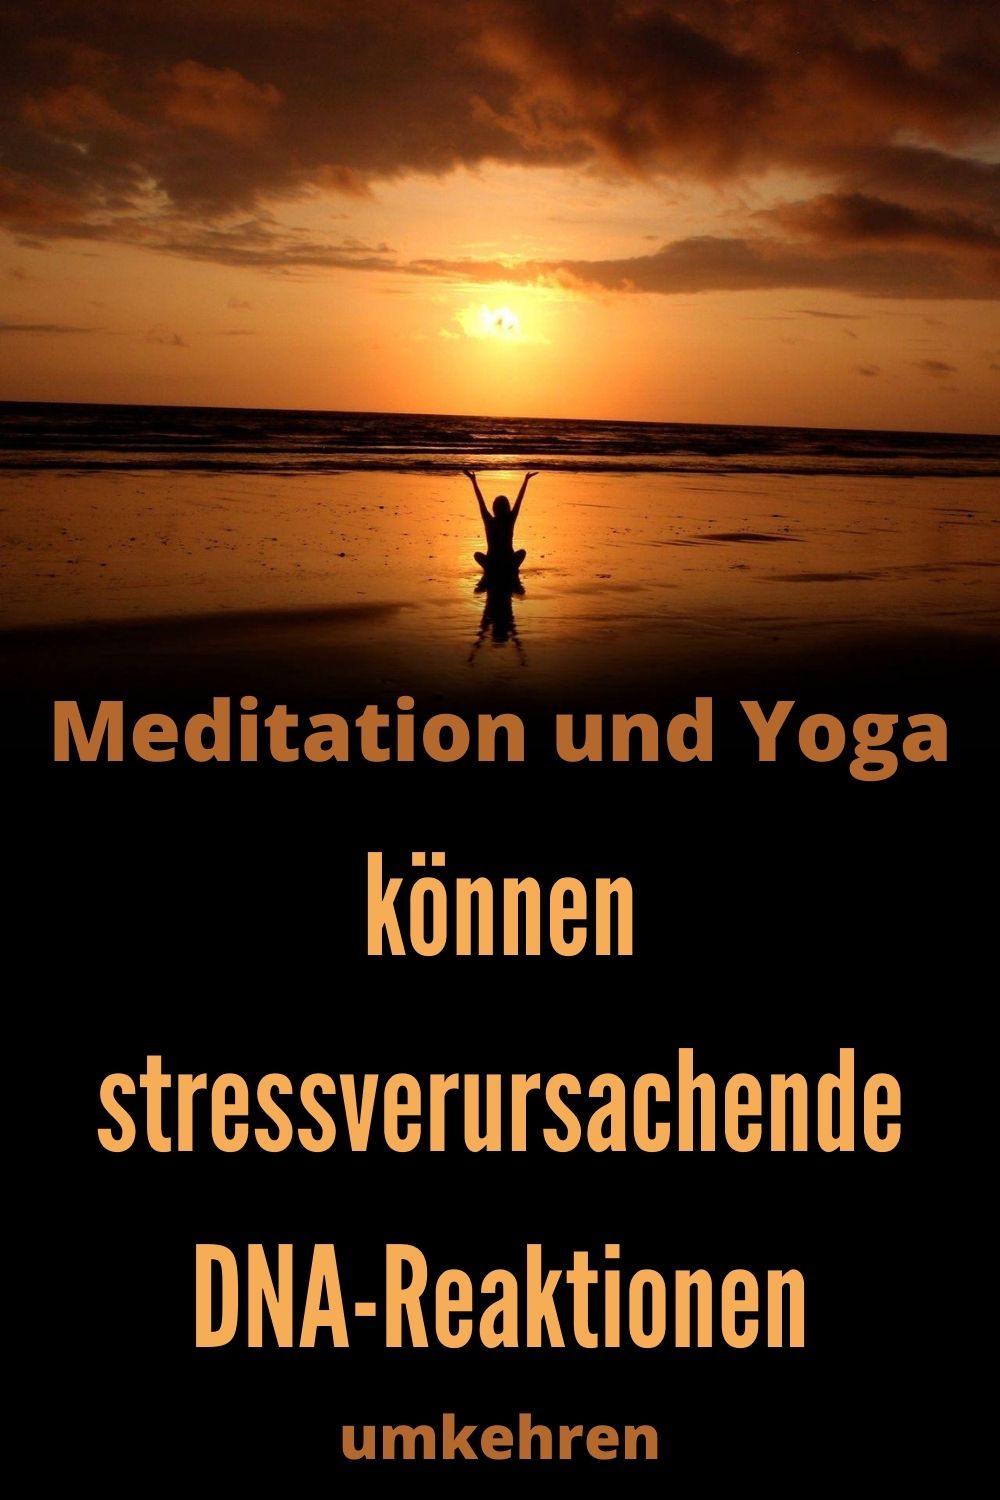 Meditation-und-Yoga-koennen-stressverursachende-DNA-Reaktionen-umkehren